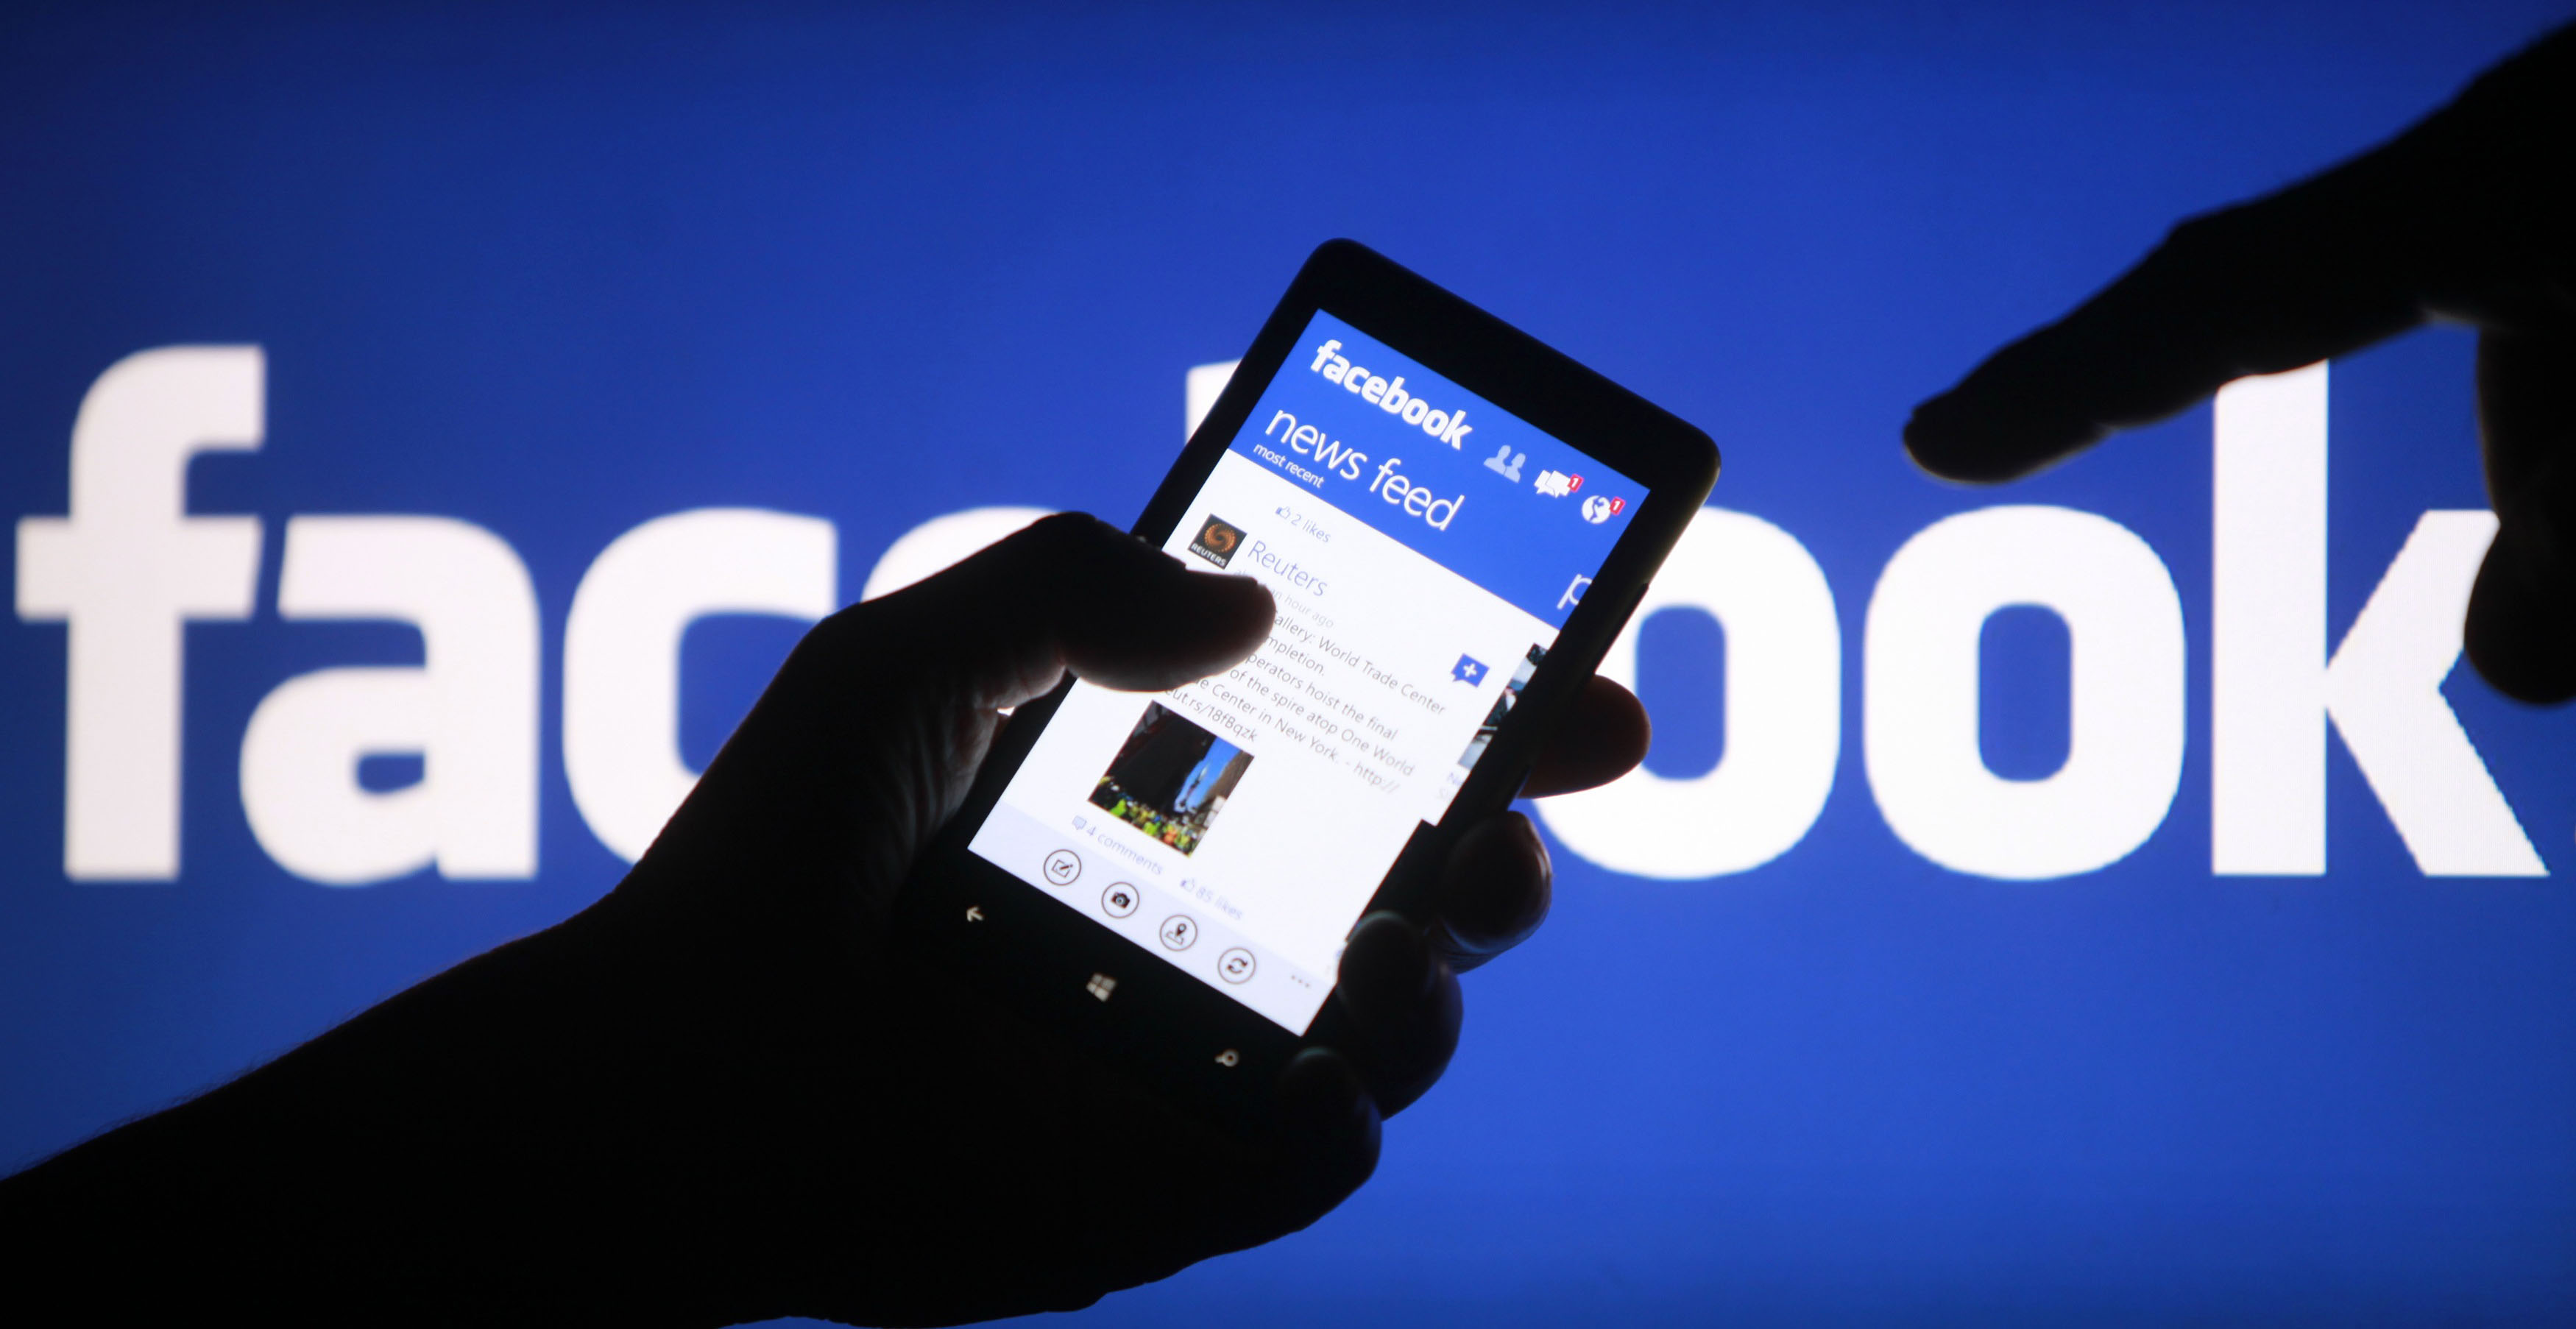 La nueva opción de Facebook fue diseñada para expresar la situación de los usuarios luego de ataques terroristas o desastres naturales